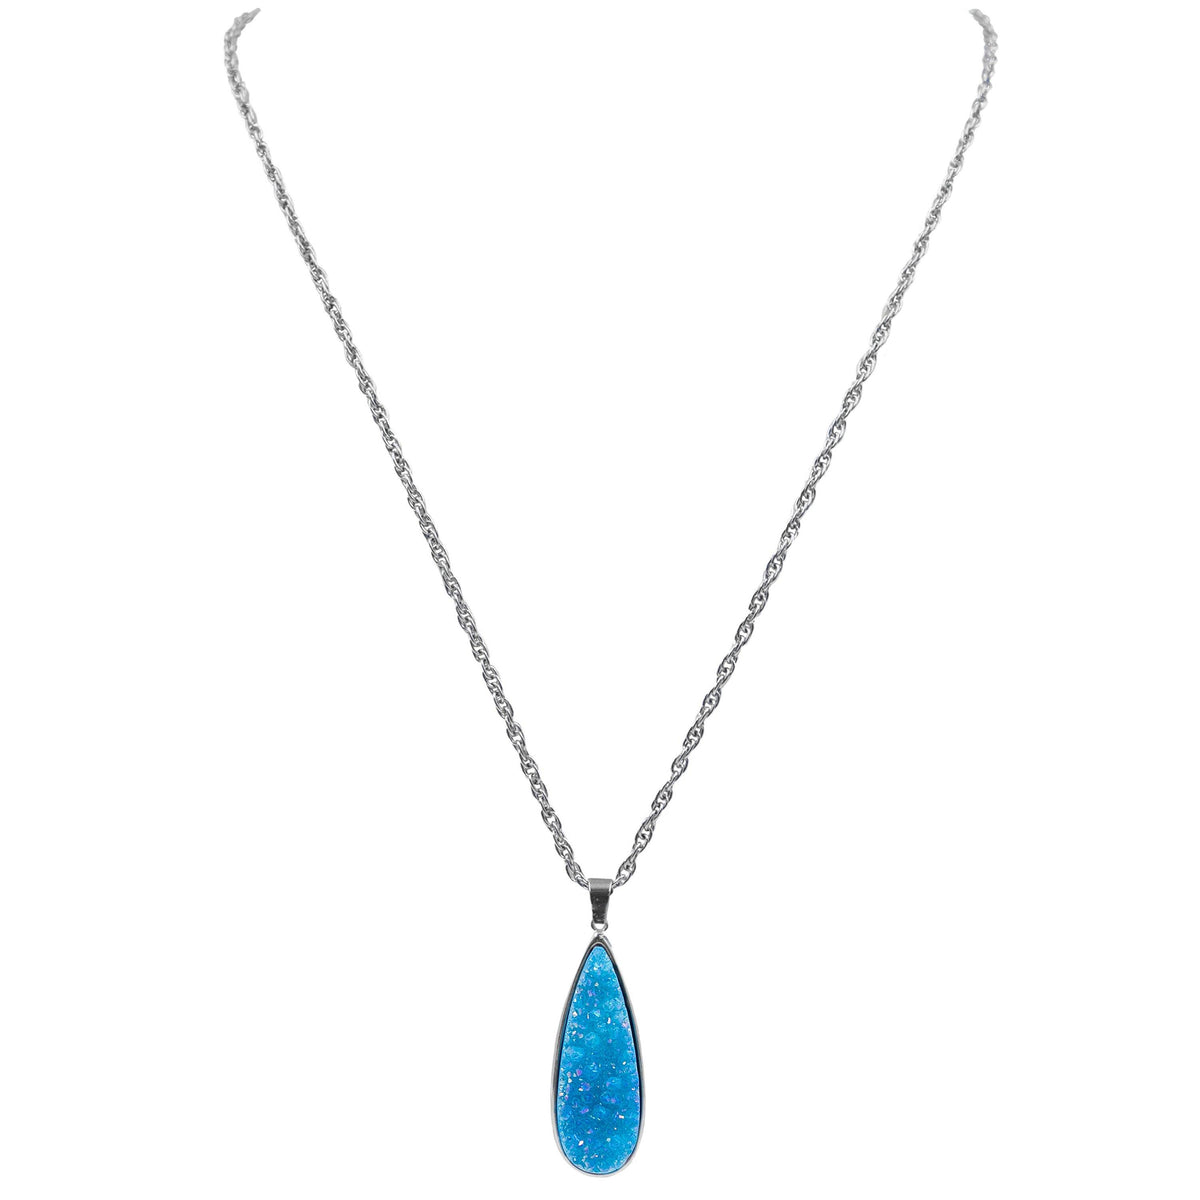 Collezione Druzy - Collana con gocce di quarzo azzurro in argento, gioielli di design per uomini e donne